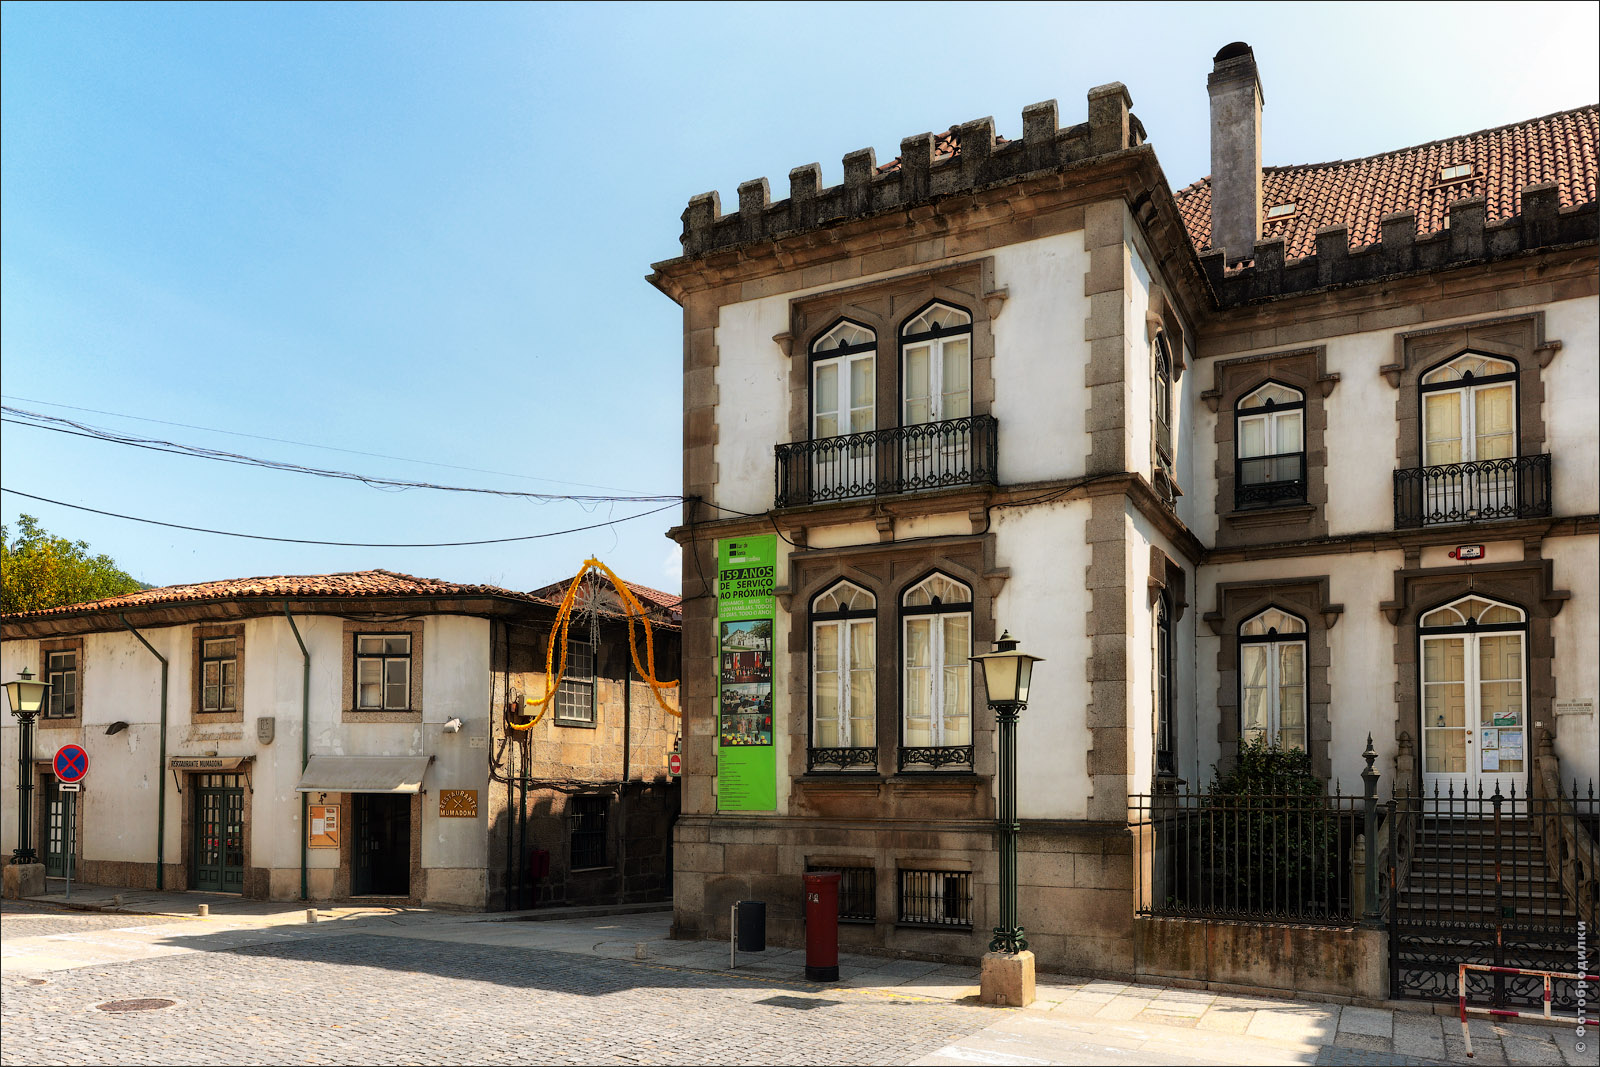 Жилой дом, Гимарайнш, Португалия